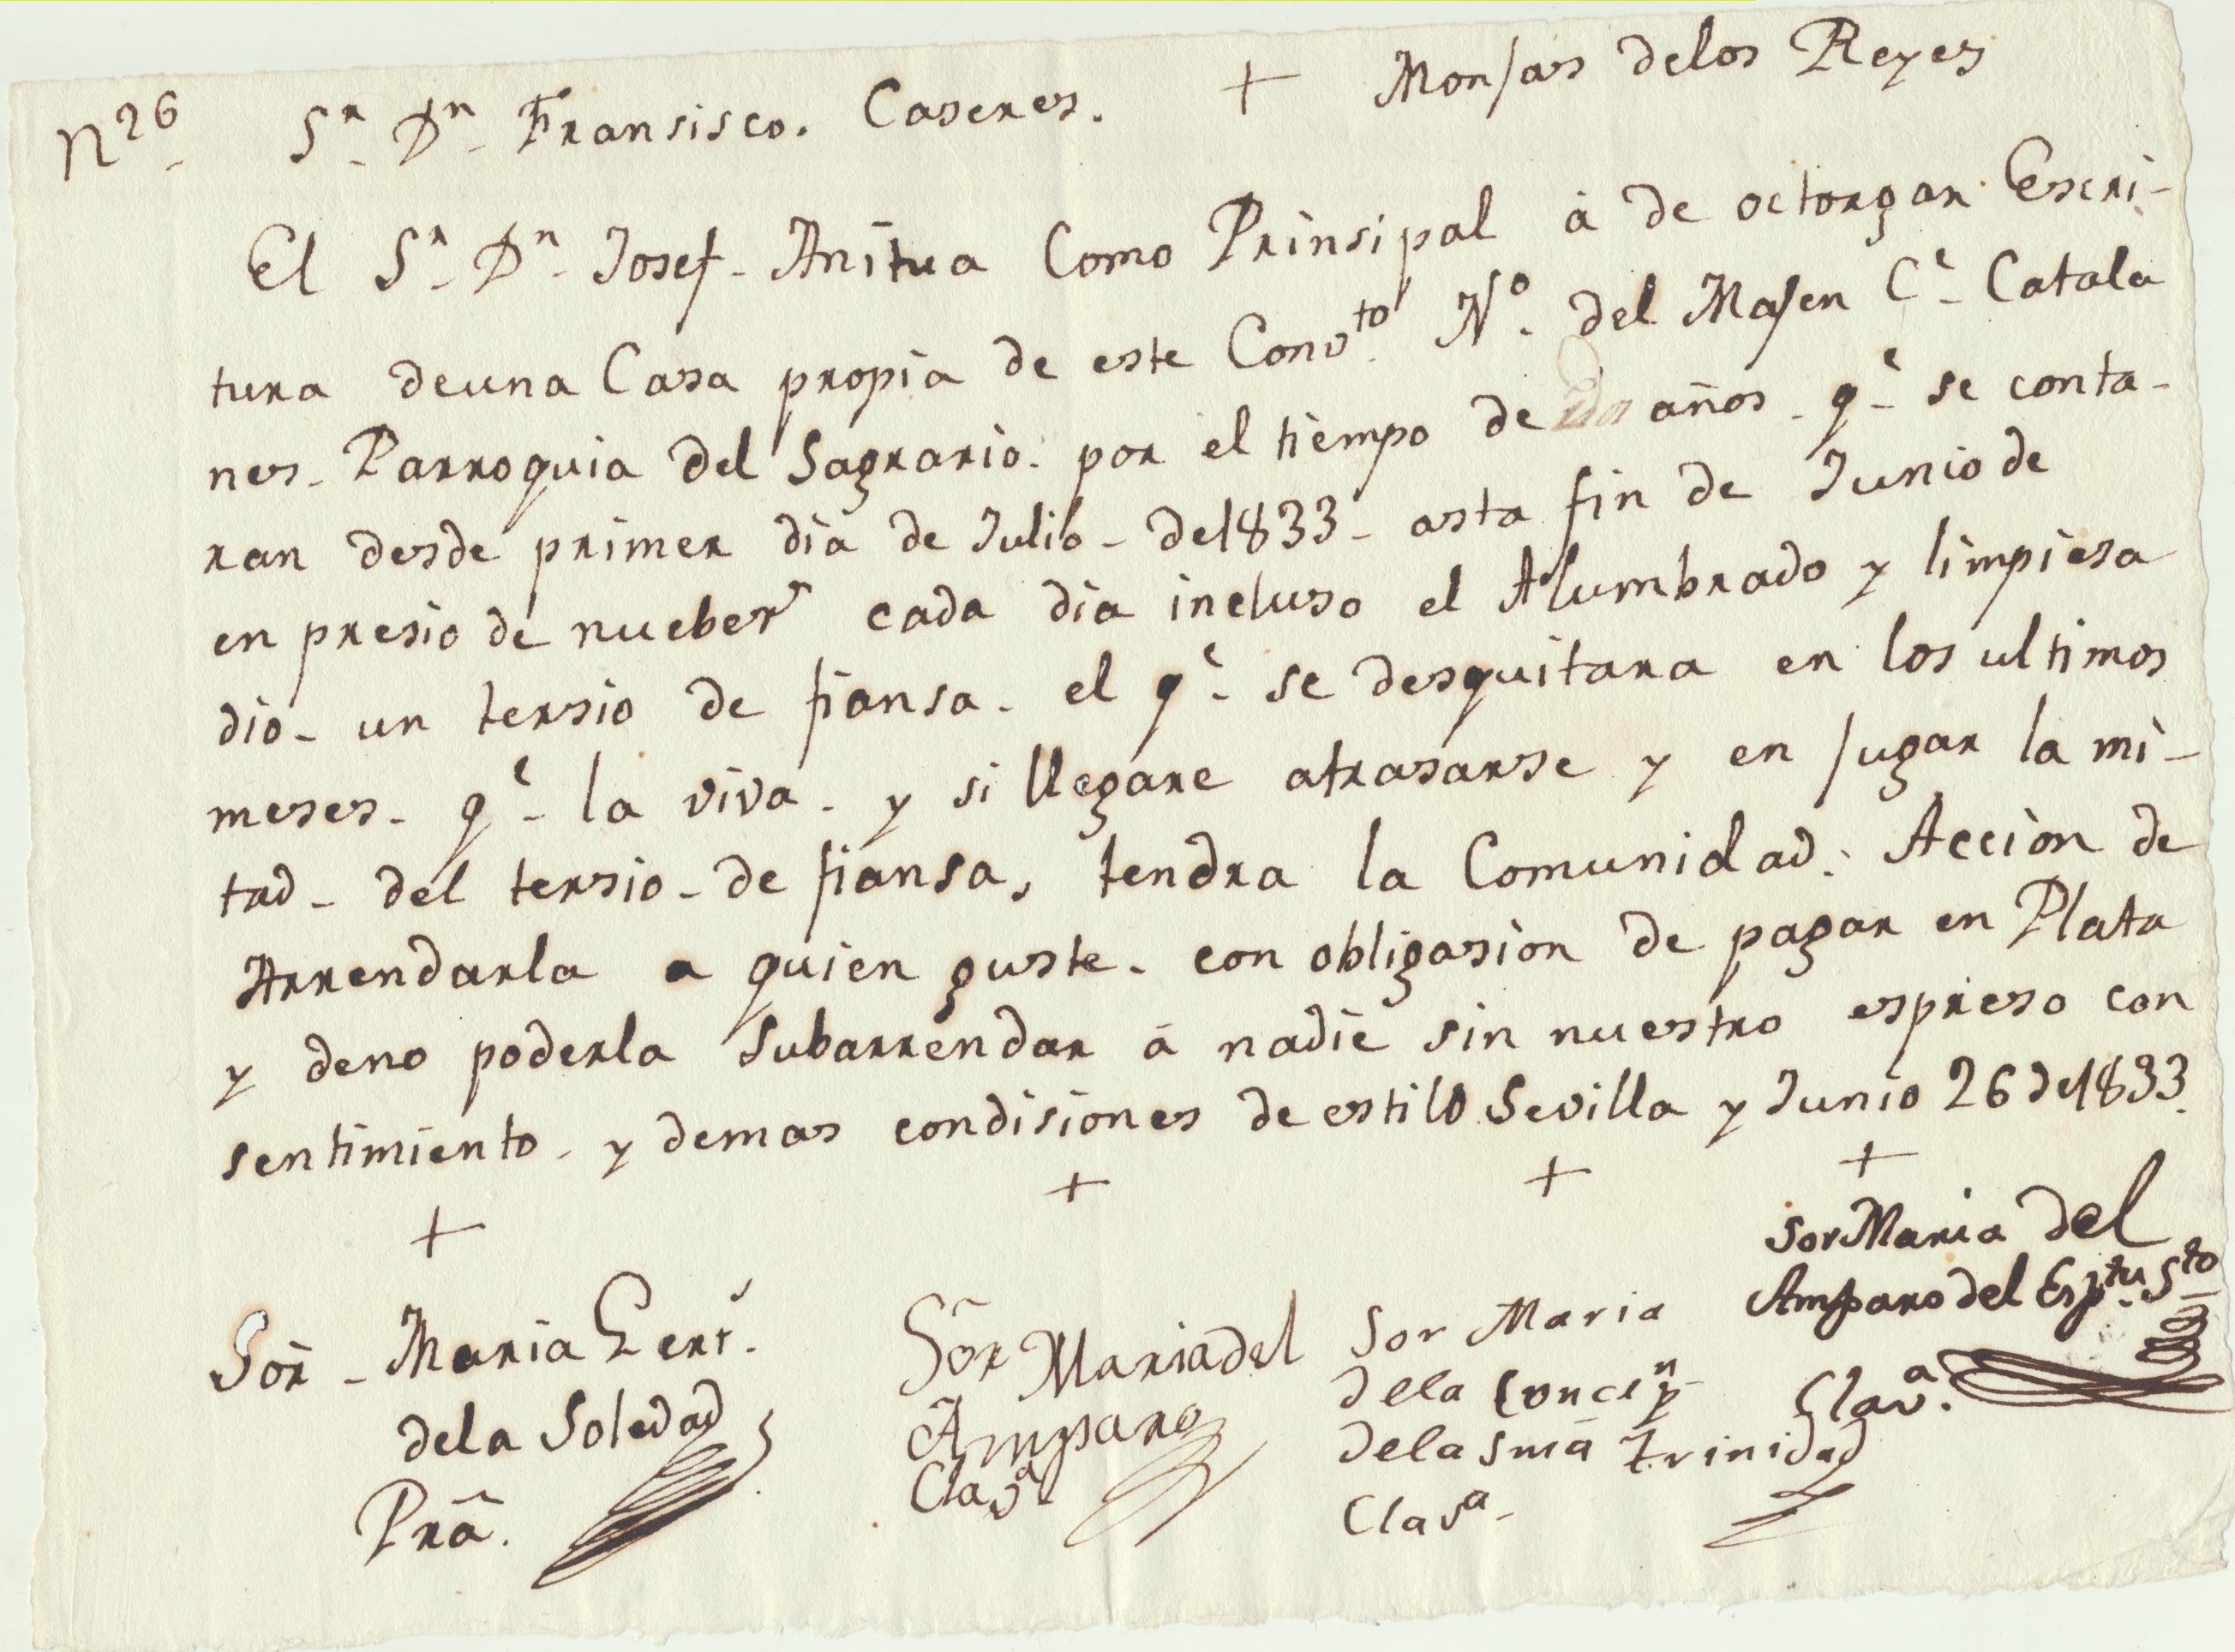 Contrato de Arrendamiento entre las Monjas de los Reyes de la parroquia del Sagrario y Don Francisco Caseres, por el tiempo de un año. Julio de 1833